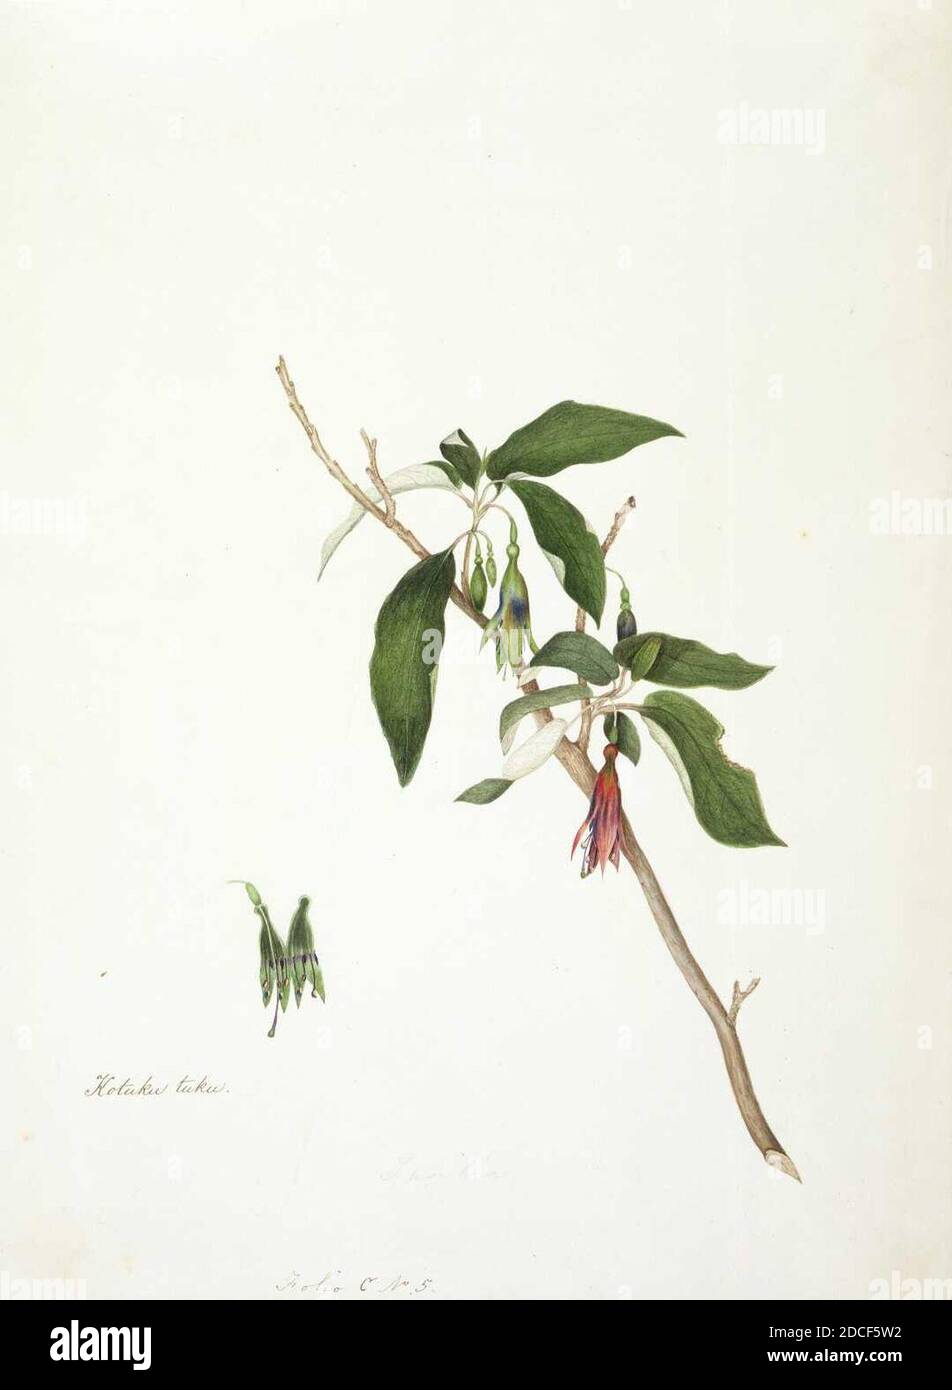 King, Martha Kotuku tuku. (Fuchsia excorticata). Stock Photo